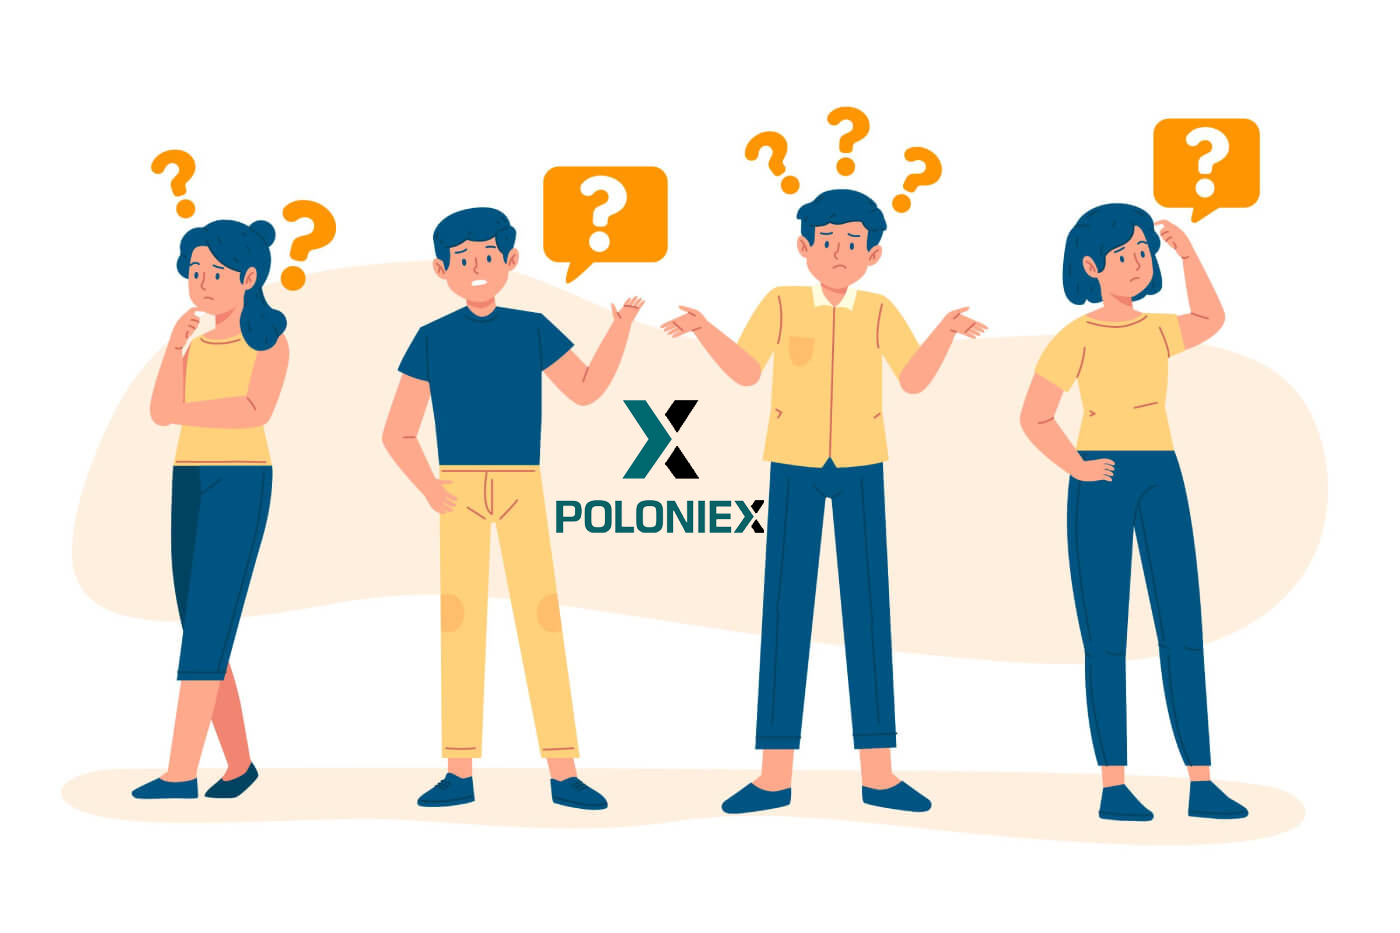 Často kladené otázky (FAQ) v Poloniex